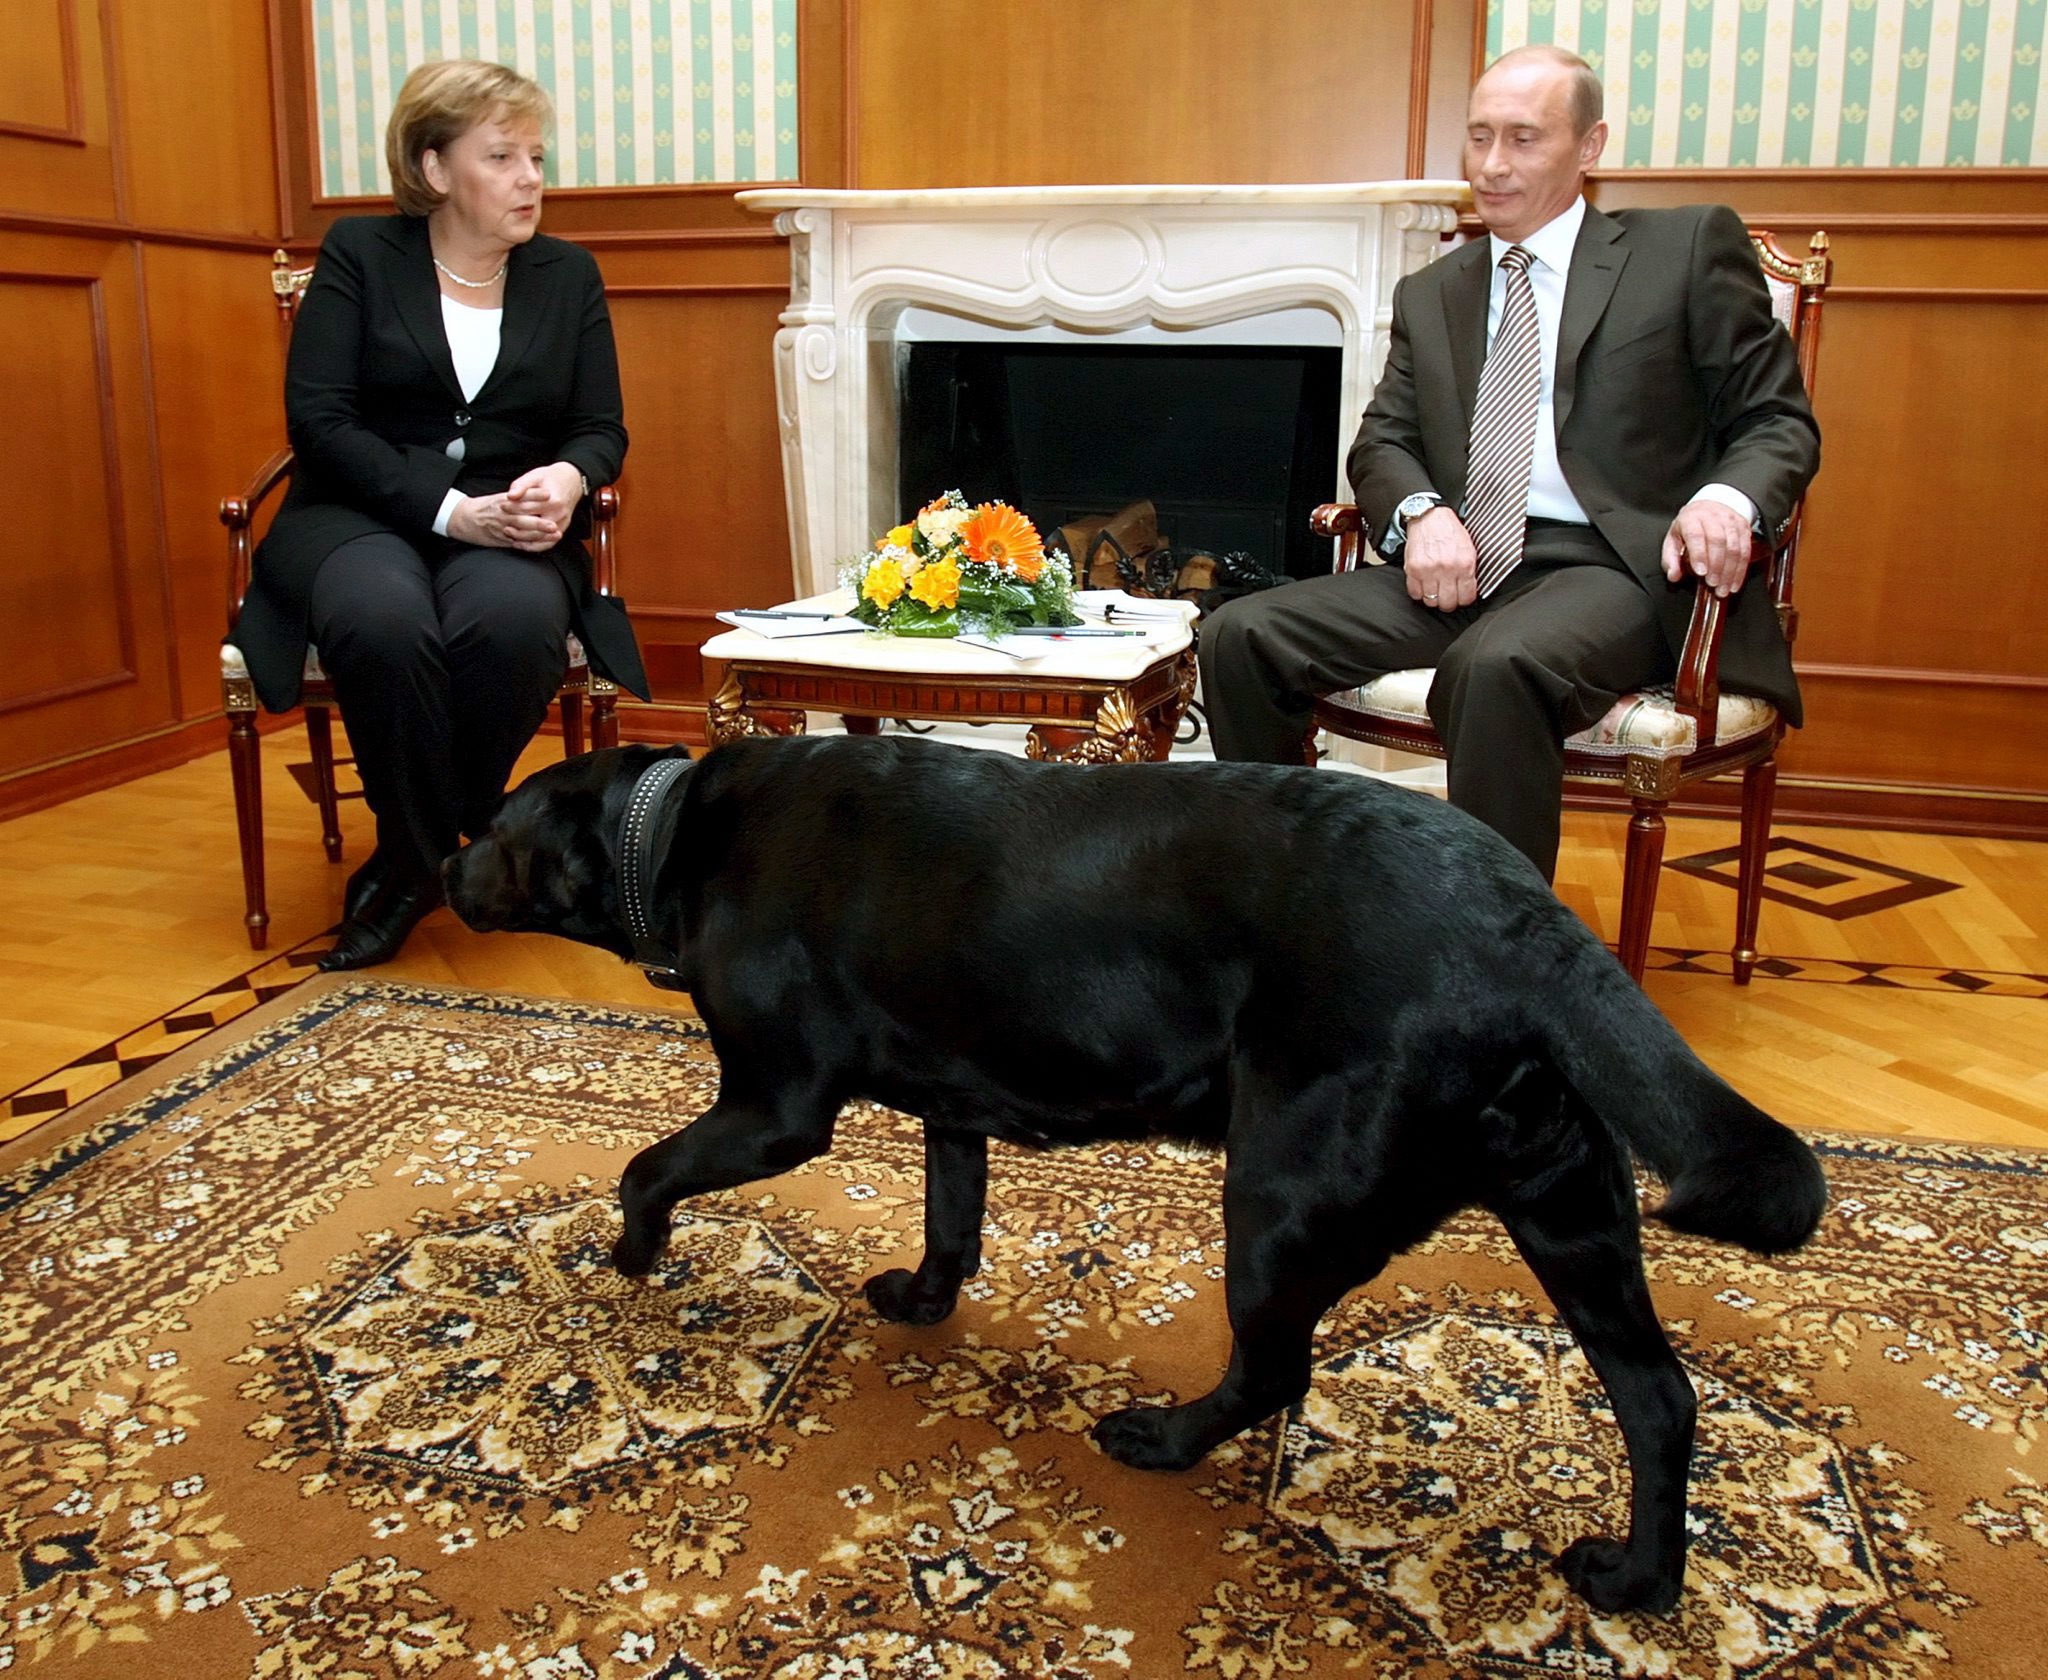 Angel Merkel és Vladigyimir Putyin találkozóján Konni, a labrador is részt vett